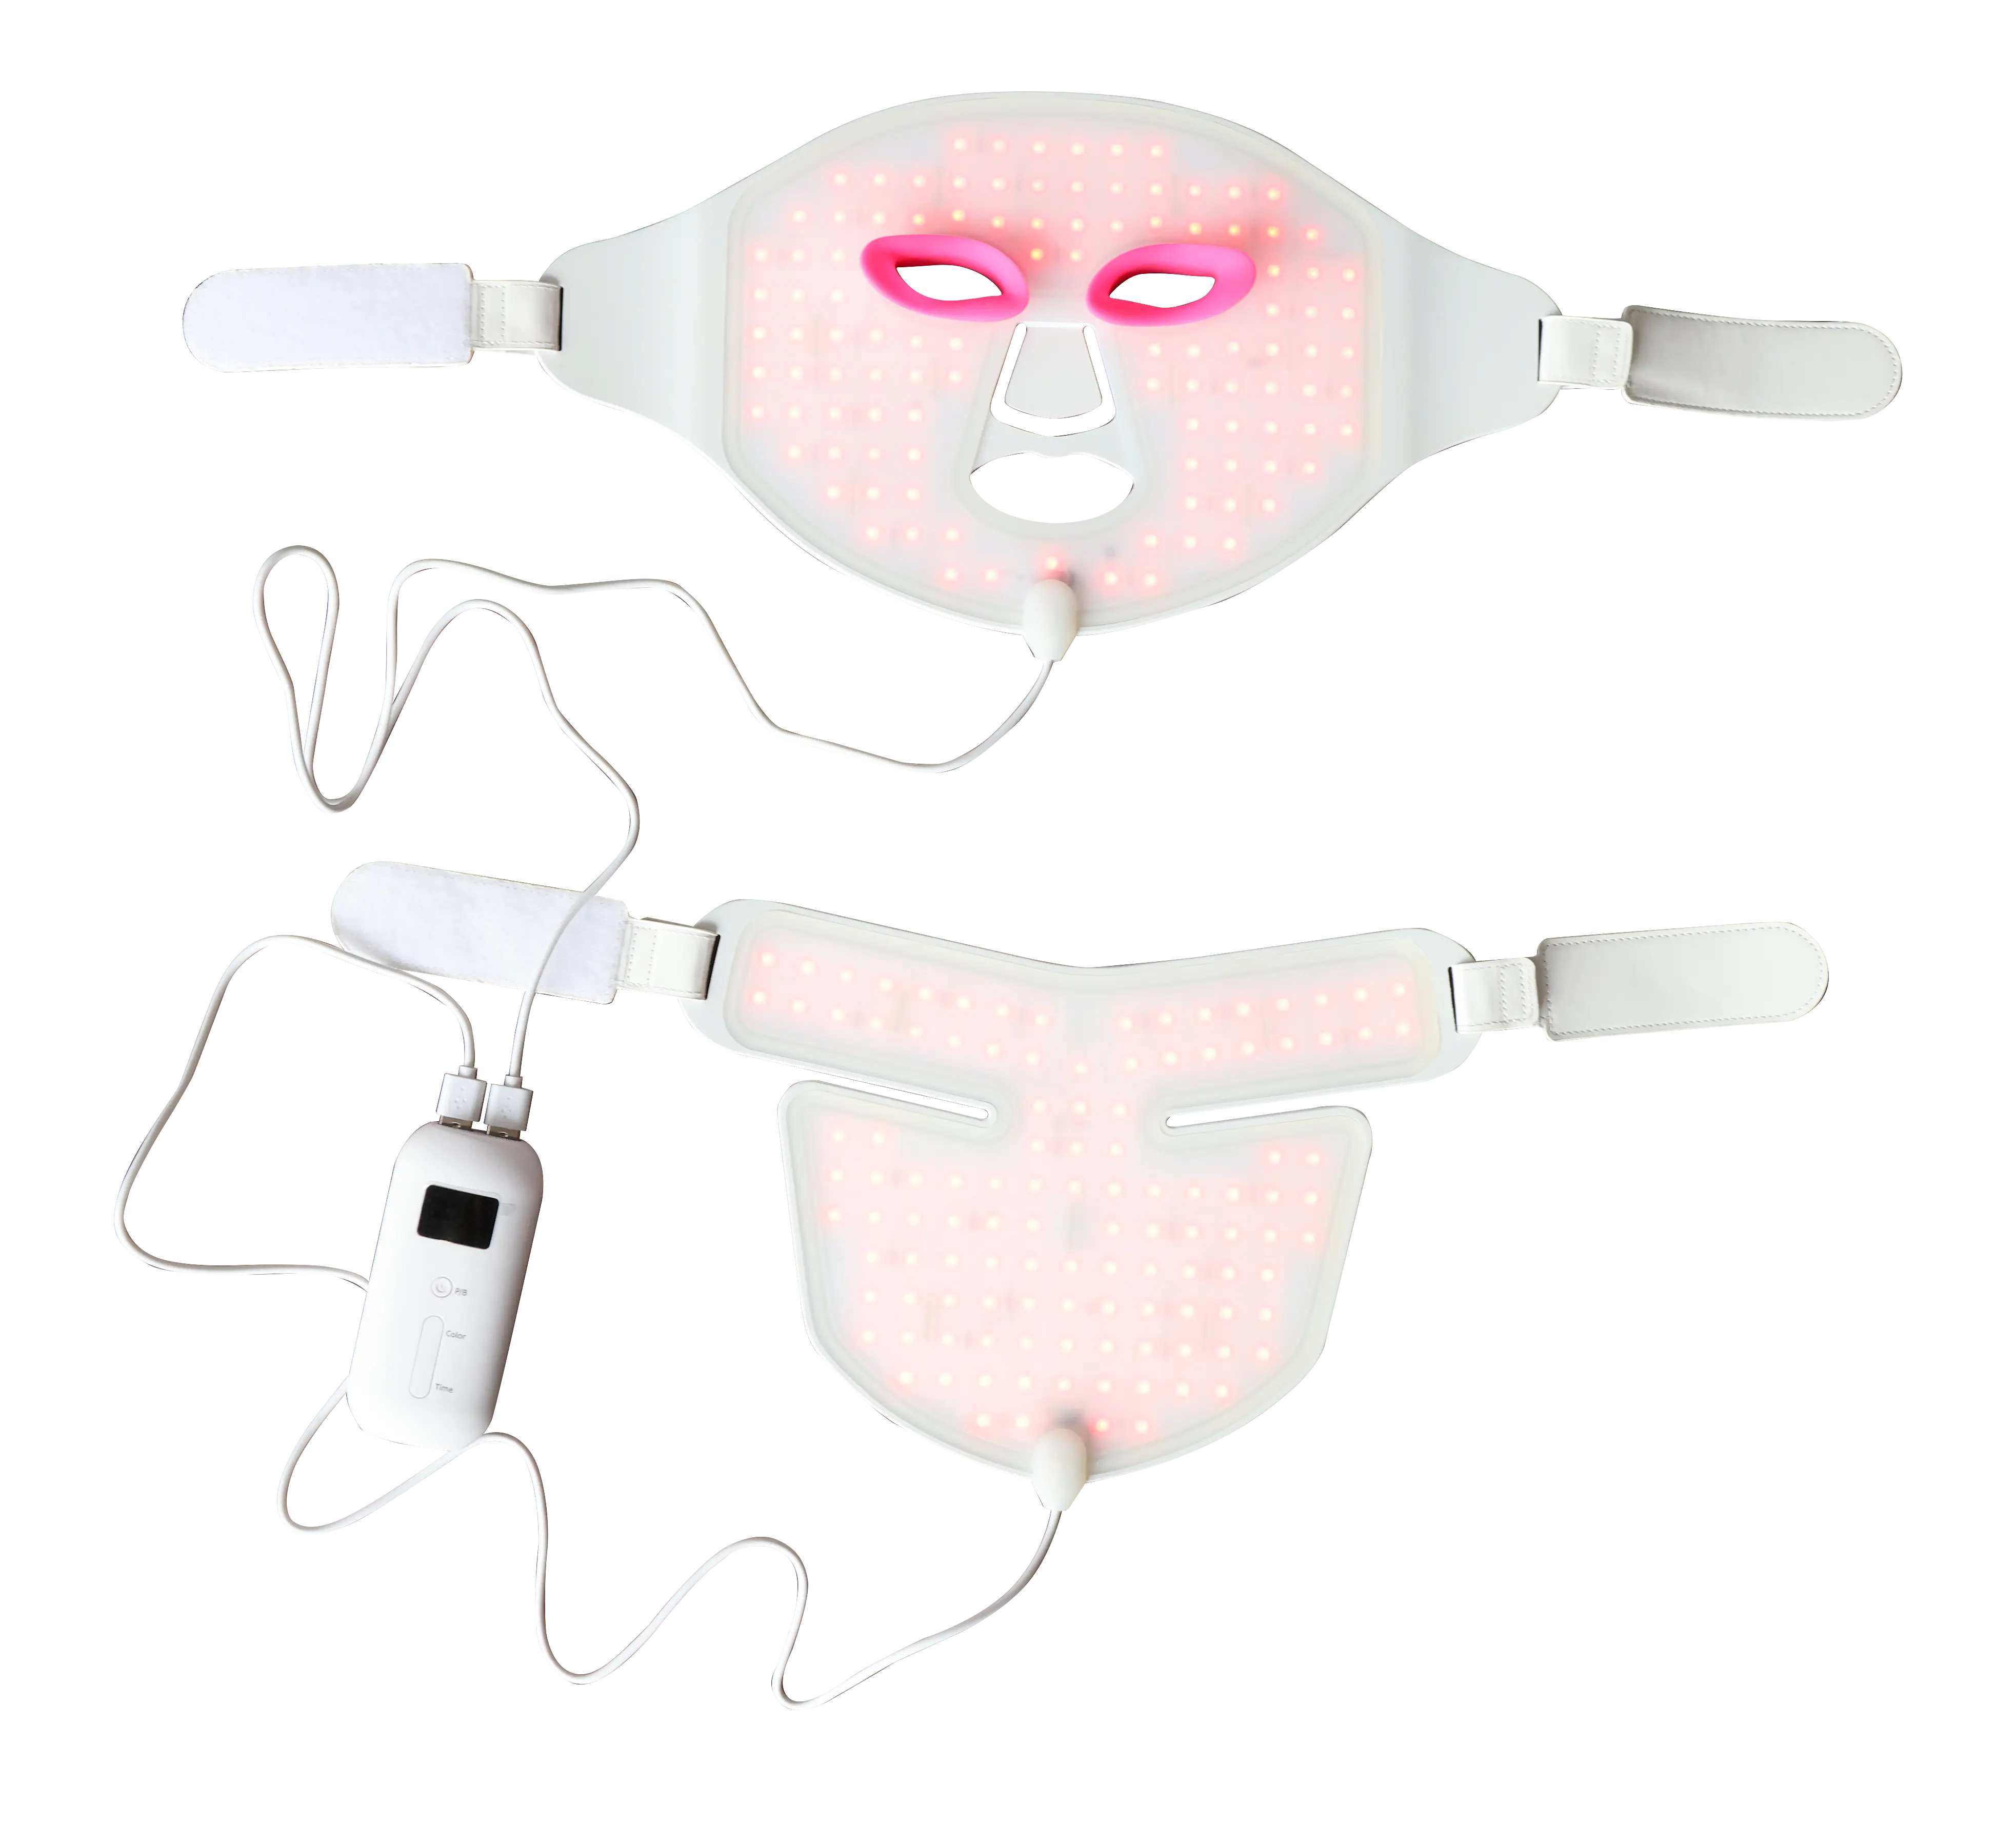 Shenzhen Ideatherapy nuovo dispositivo di bellezza colorato Led maschera facciale 7 colori luce per la cura della pelle del viso